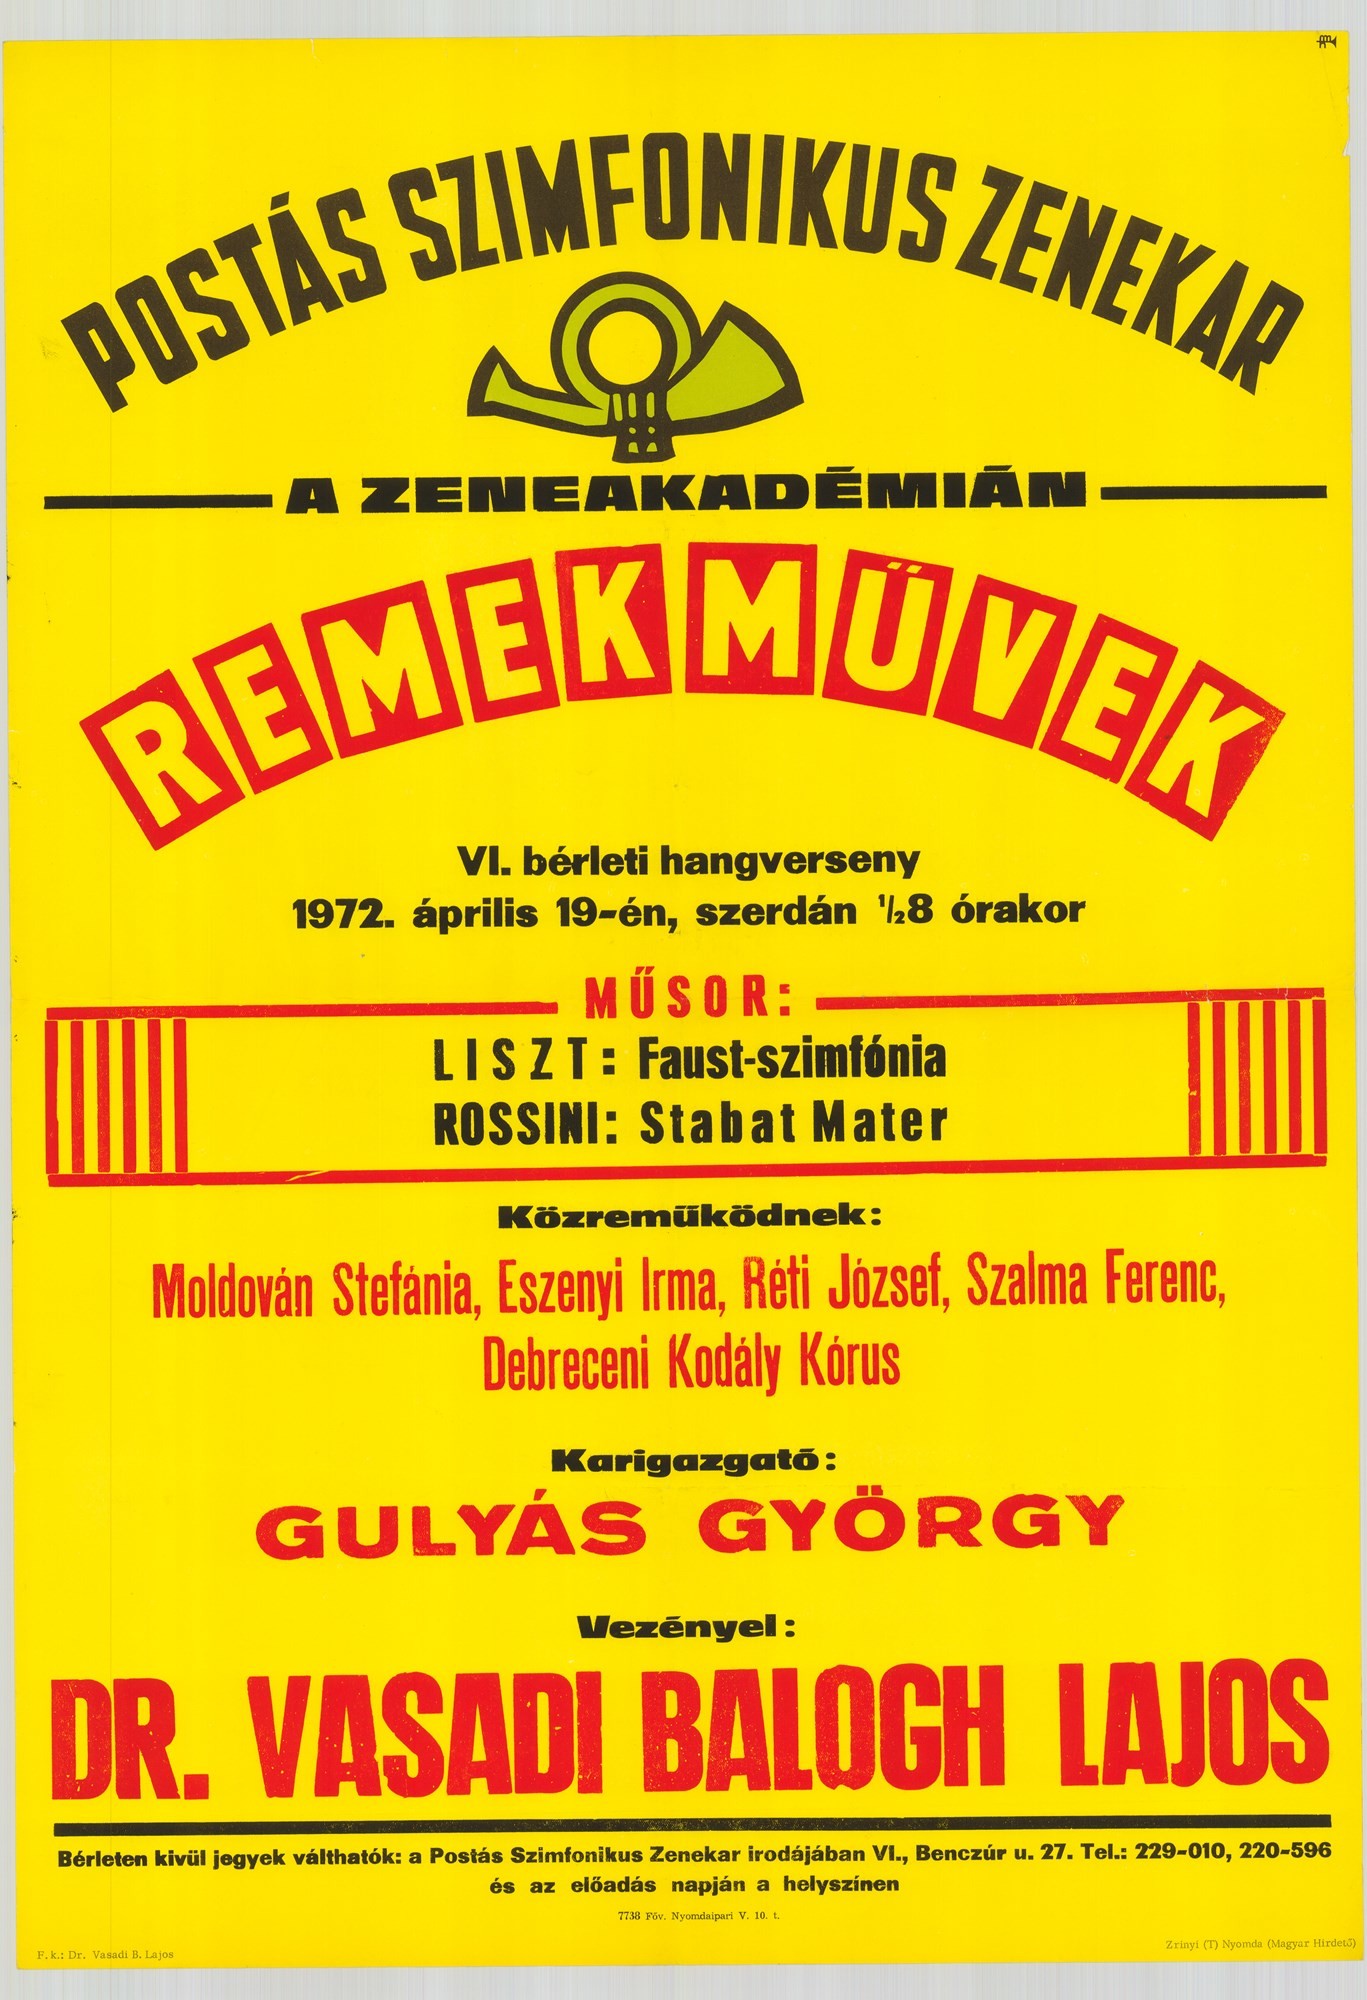 Plakát - Postás Szimfonikus Zenekar a Zeneakadémián, Remekművek, 1972 (Postamúzeum CC BY-NC-SA)